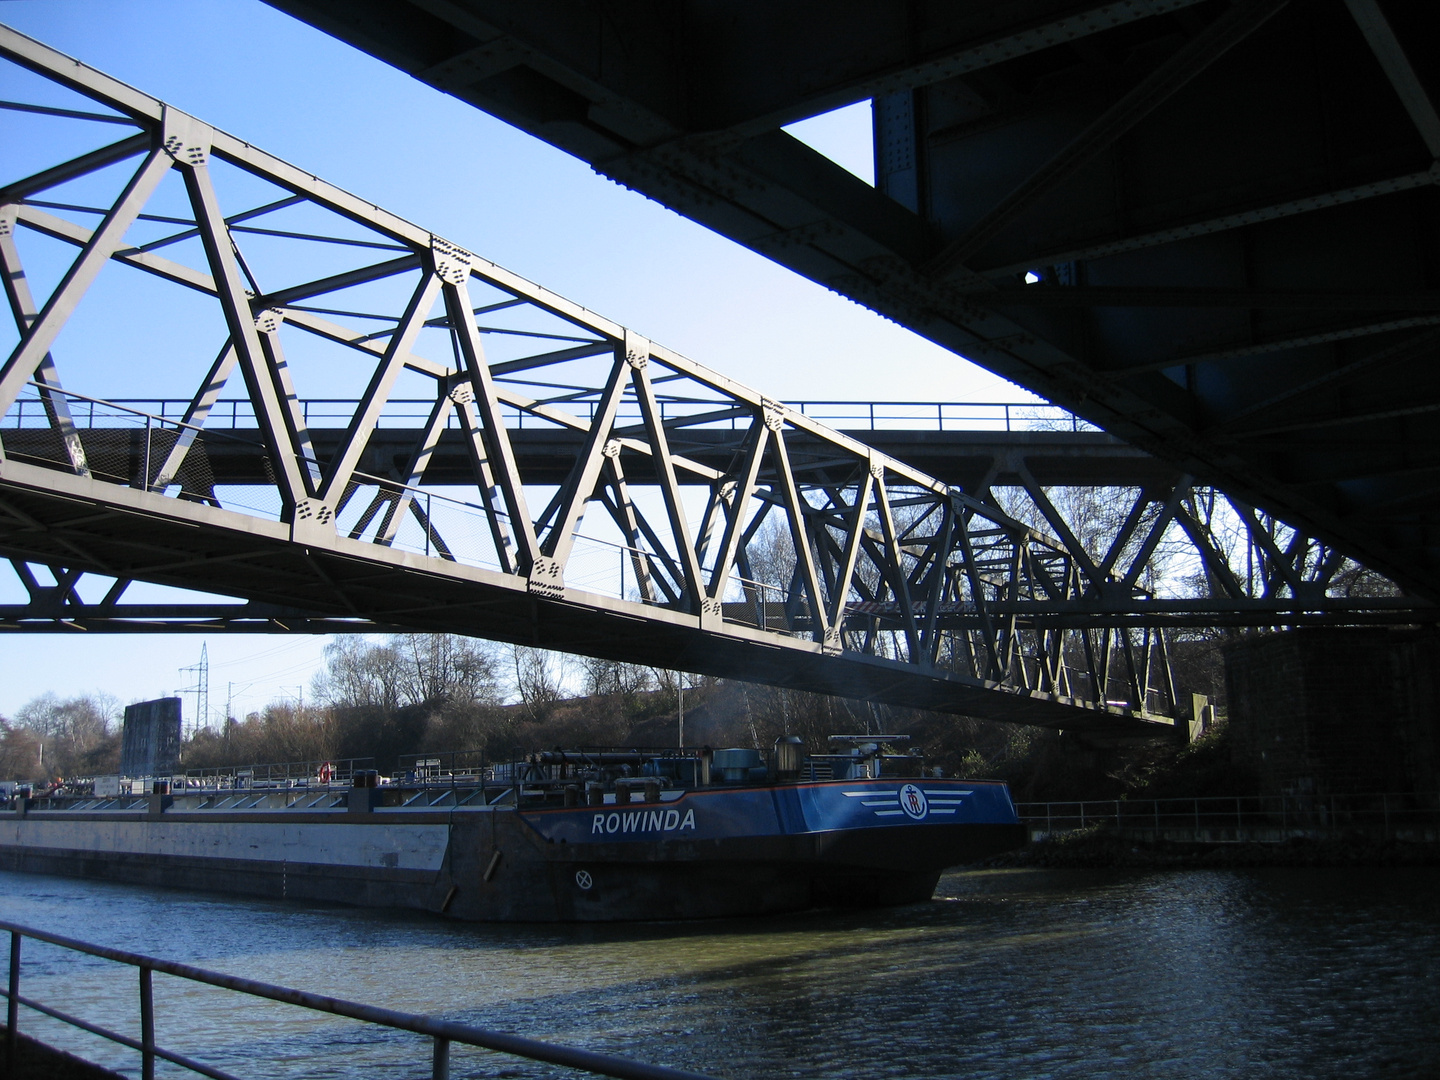 Rowinda Tankschiff auf dem Rhein-Herne-Kanal